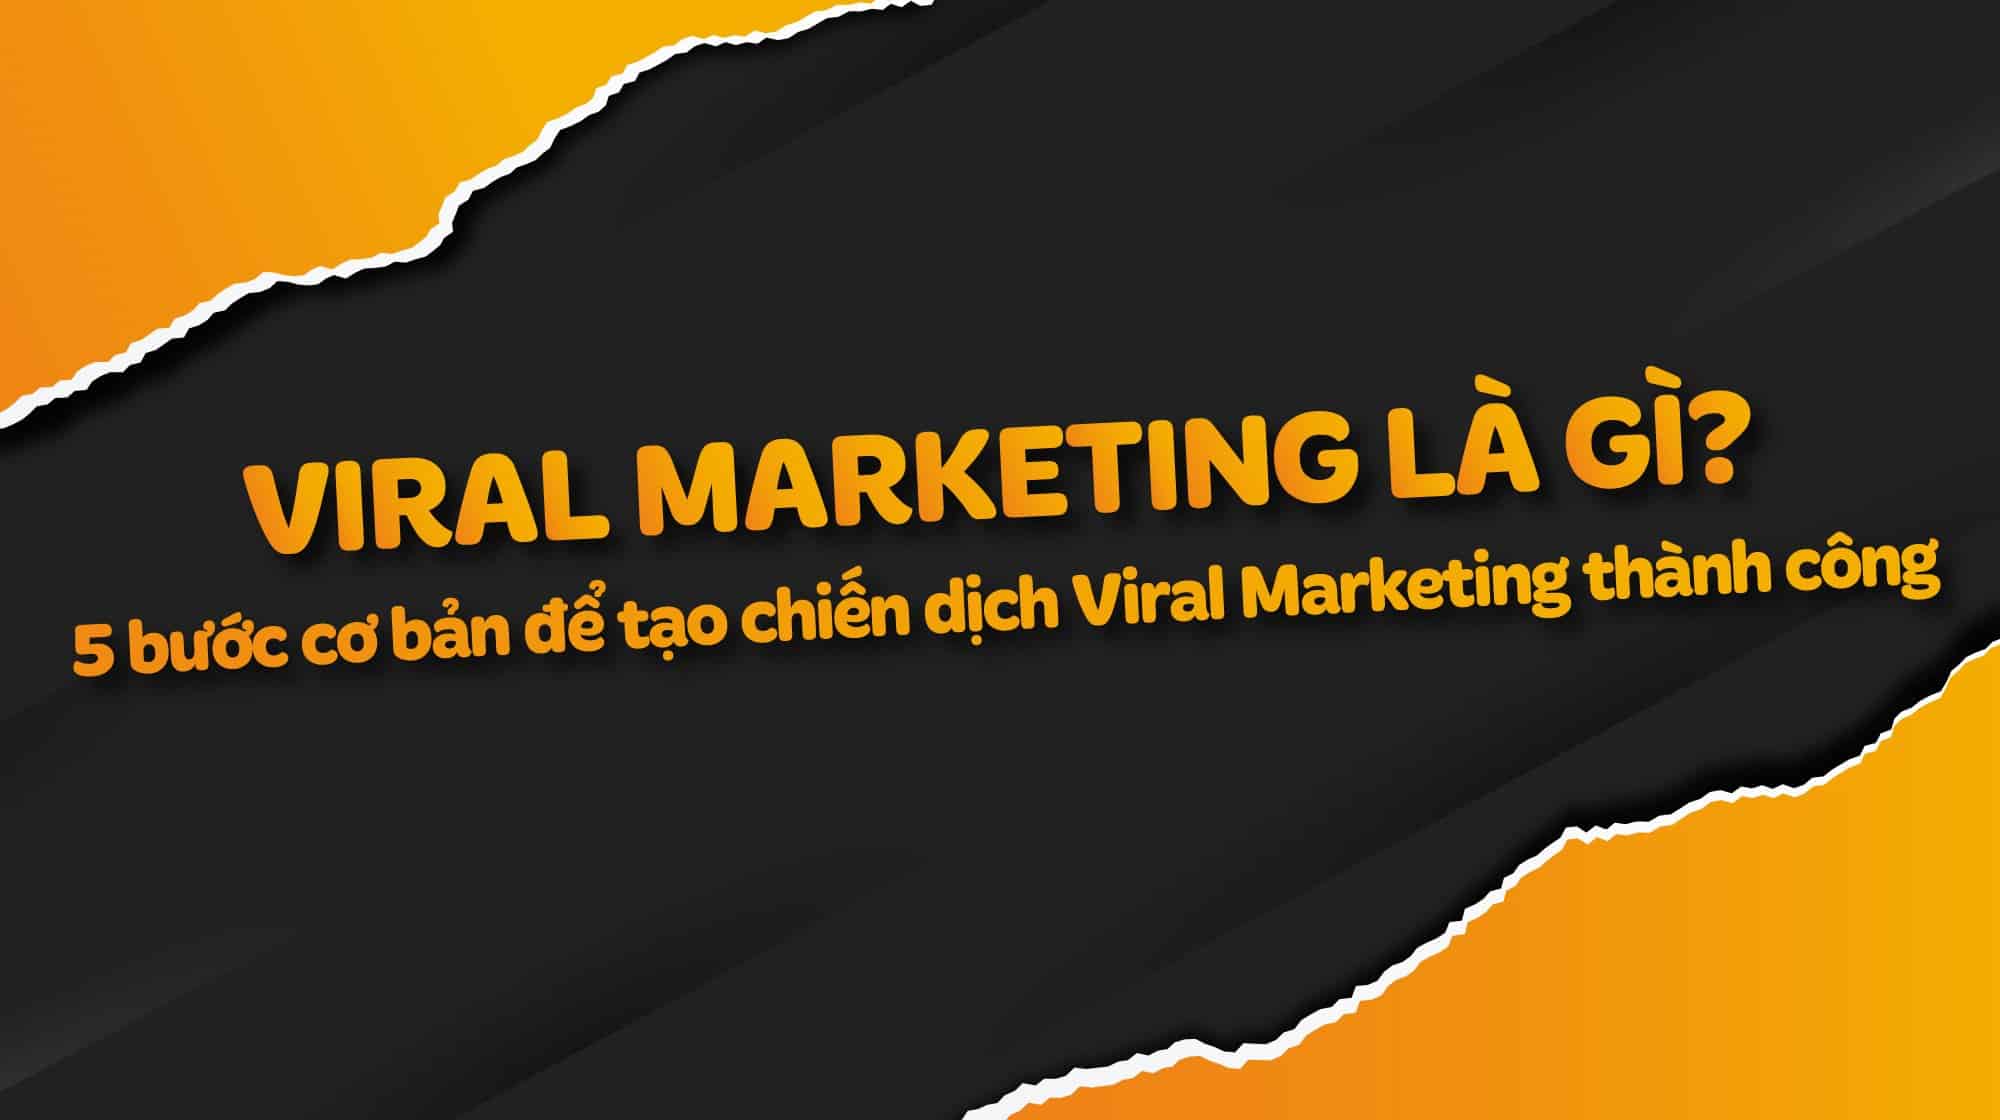 Viral Marketing là gì? 5 bước tạo chiến dịch Viral Marketing